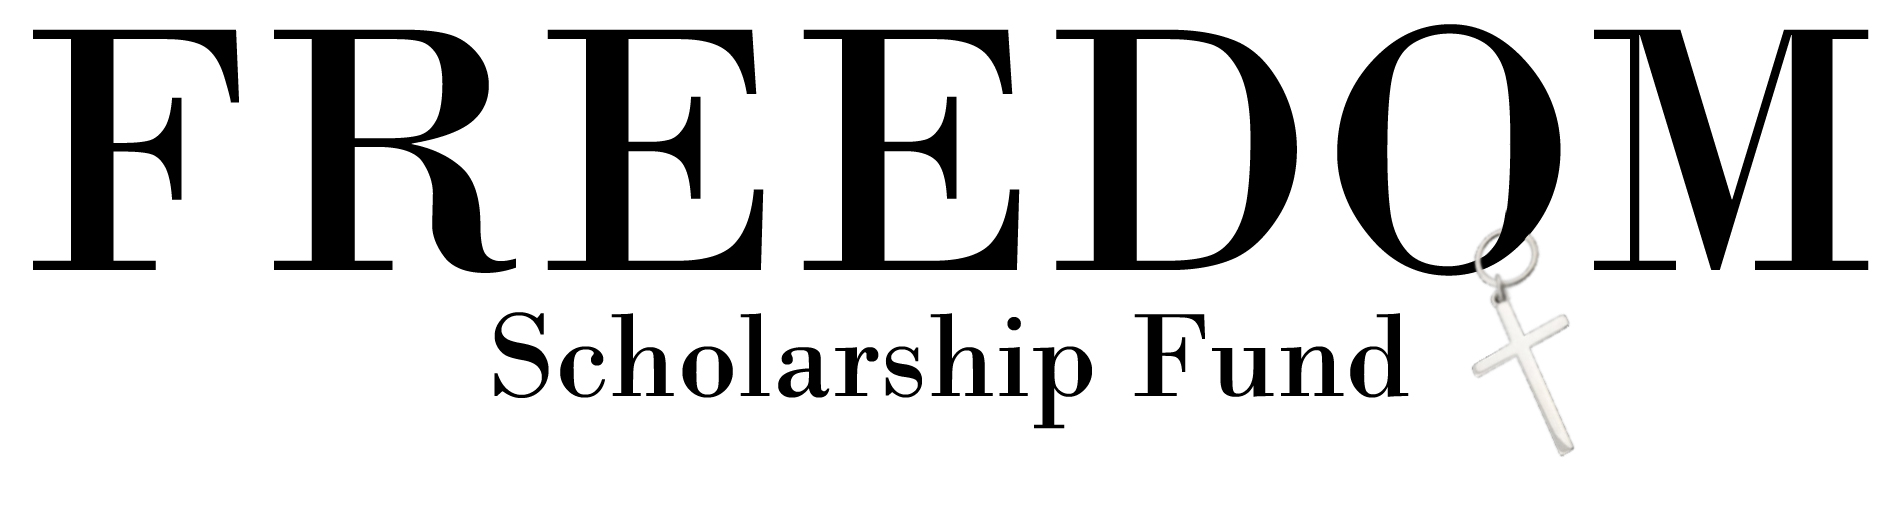 Freedom Scholarship Fund